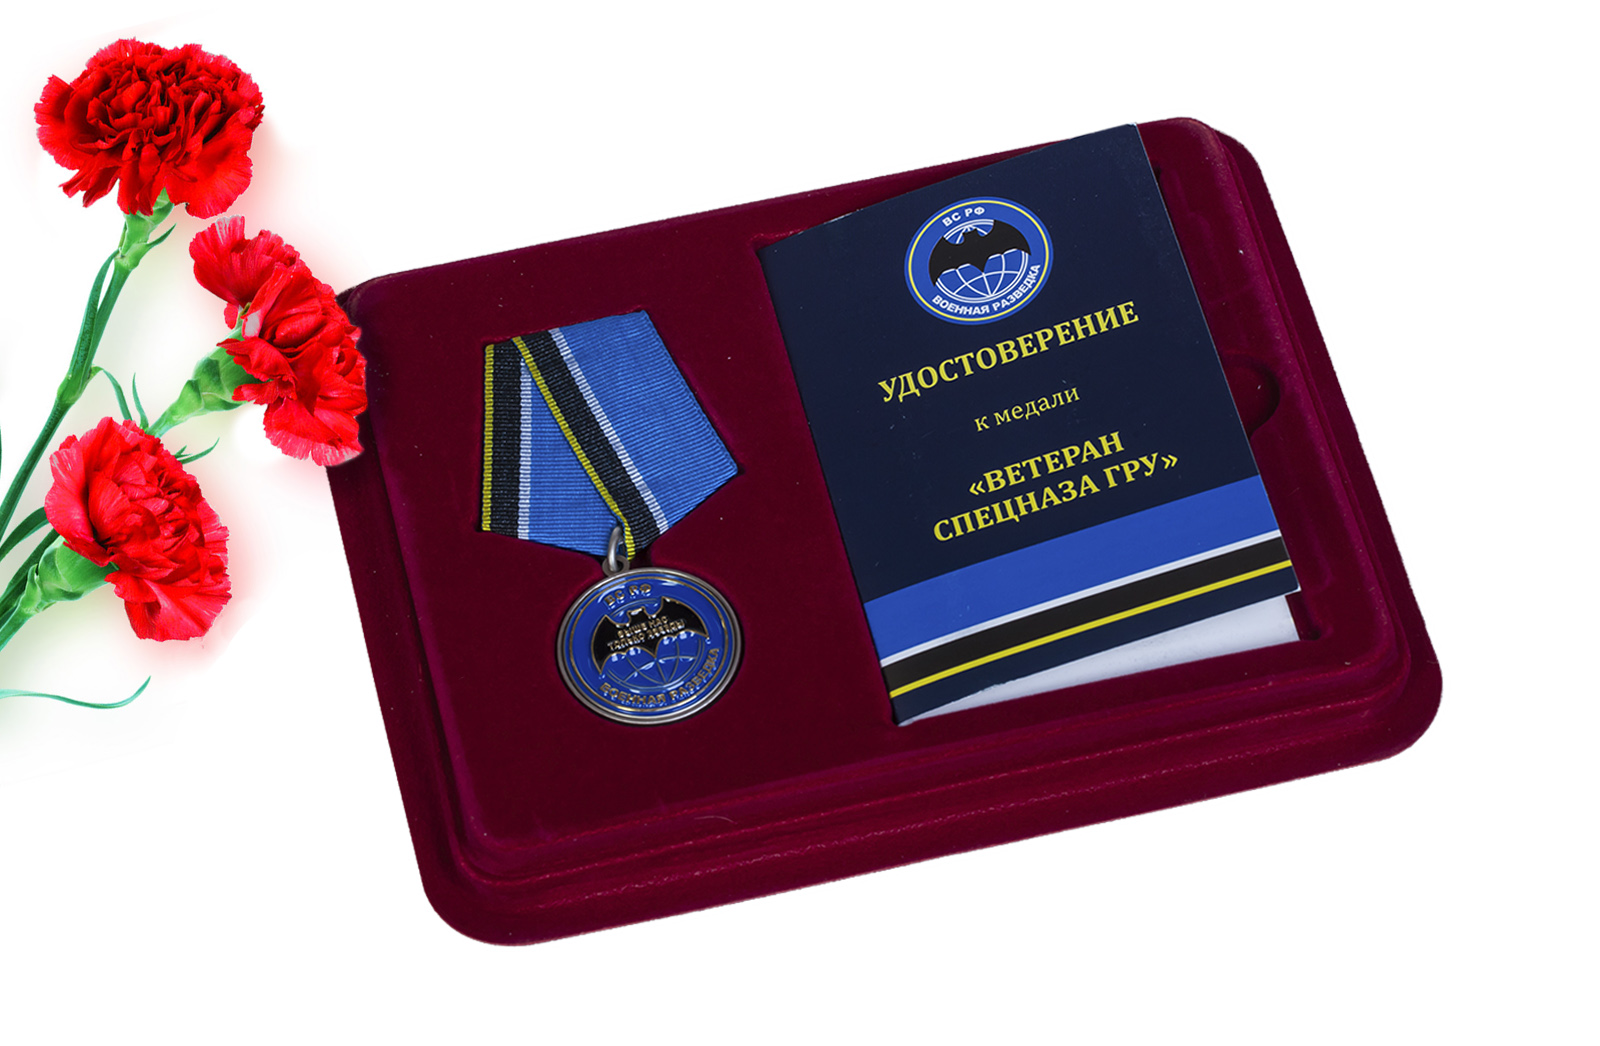 Купить общественную медаль "Ветеран спецназа ГРУ" оптом или в розницу